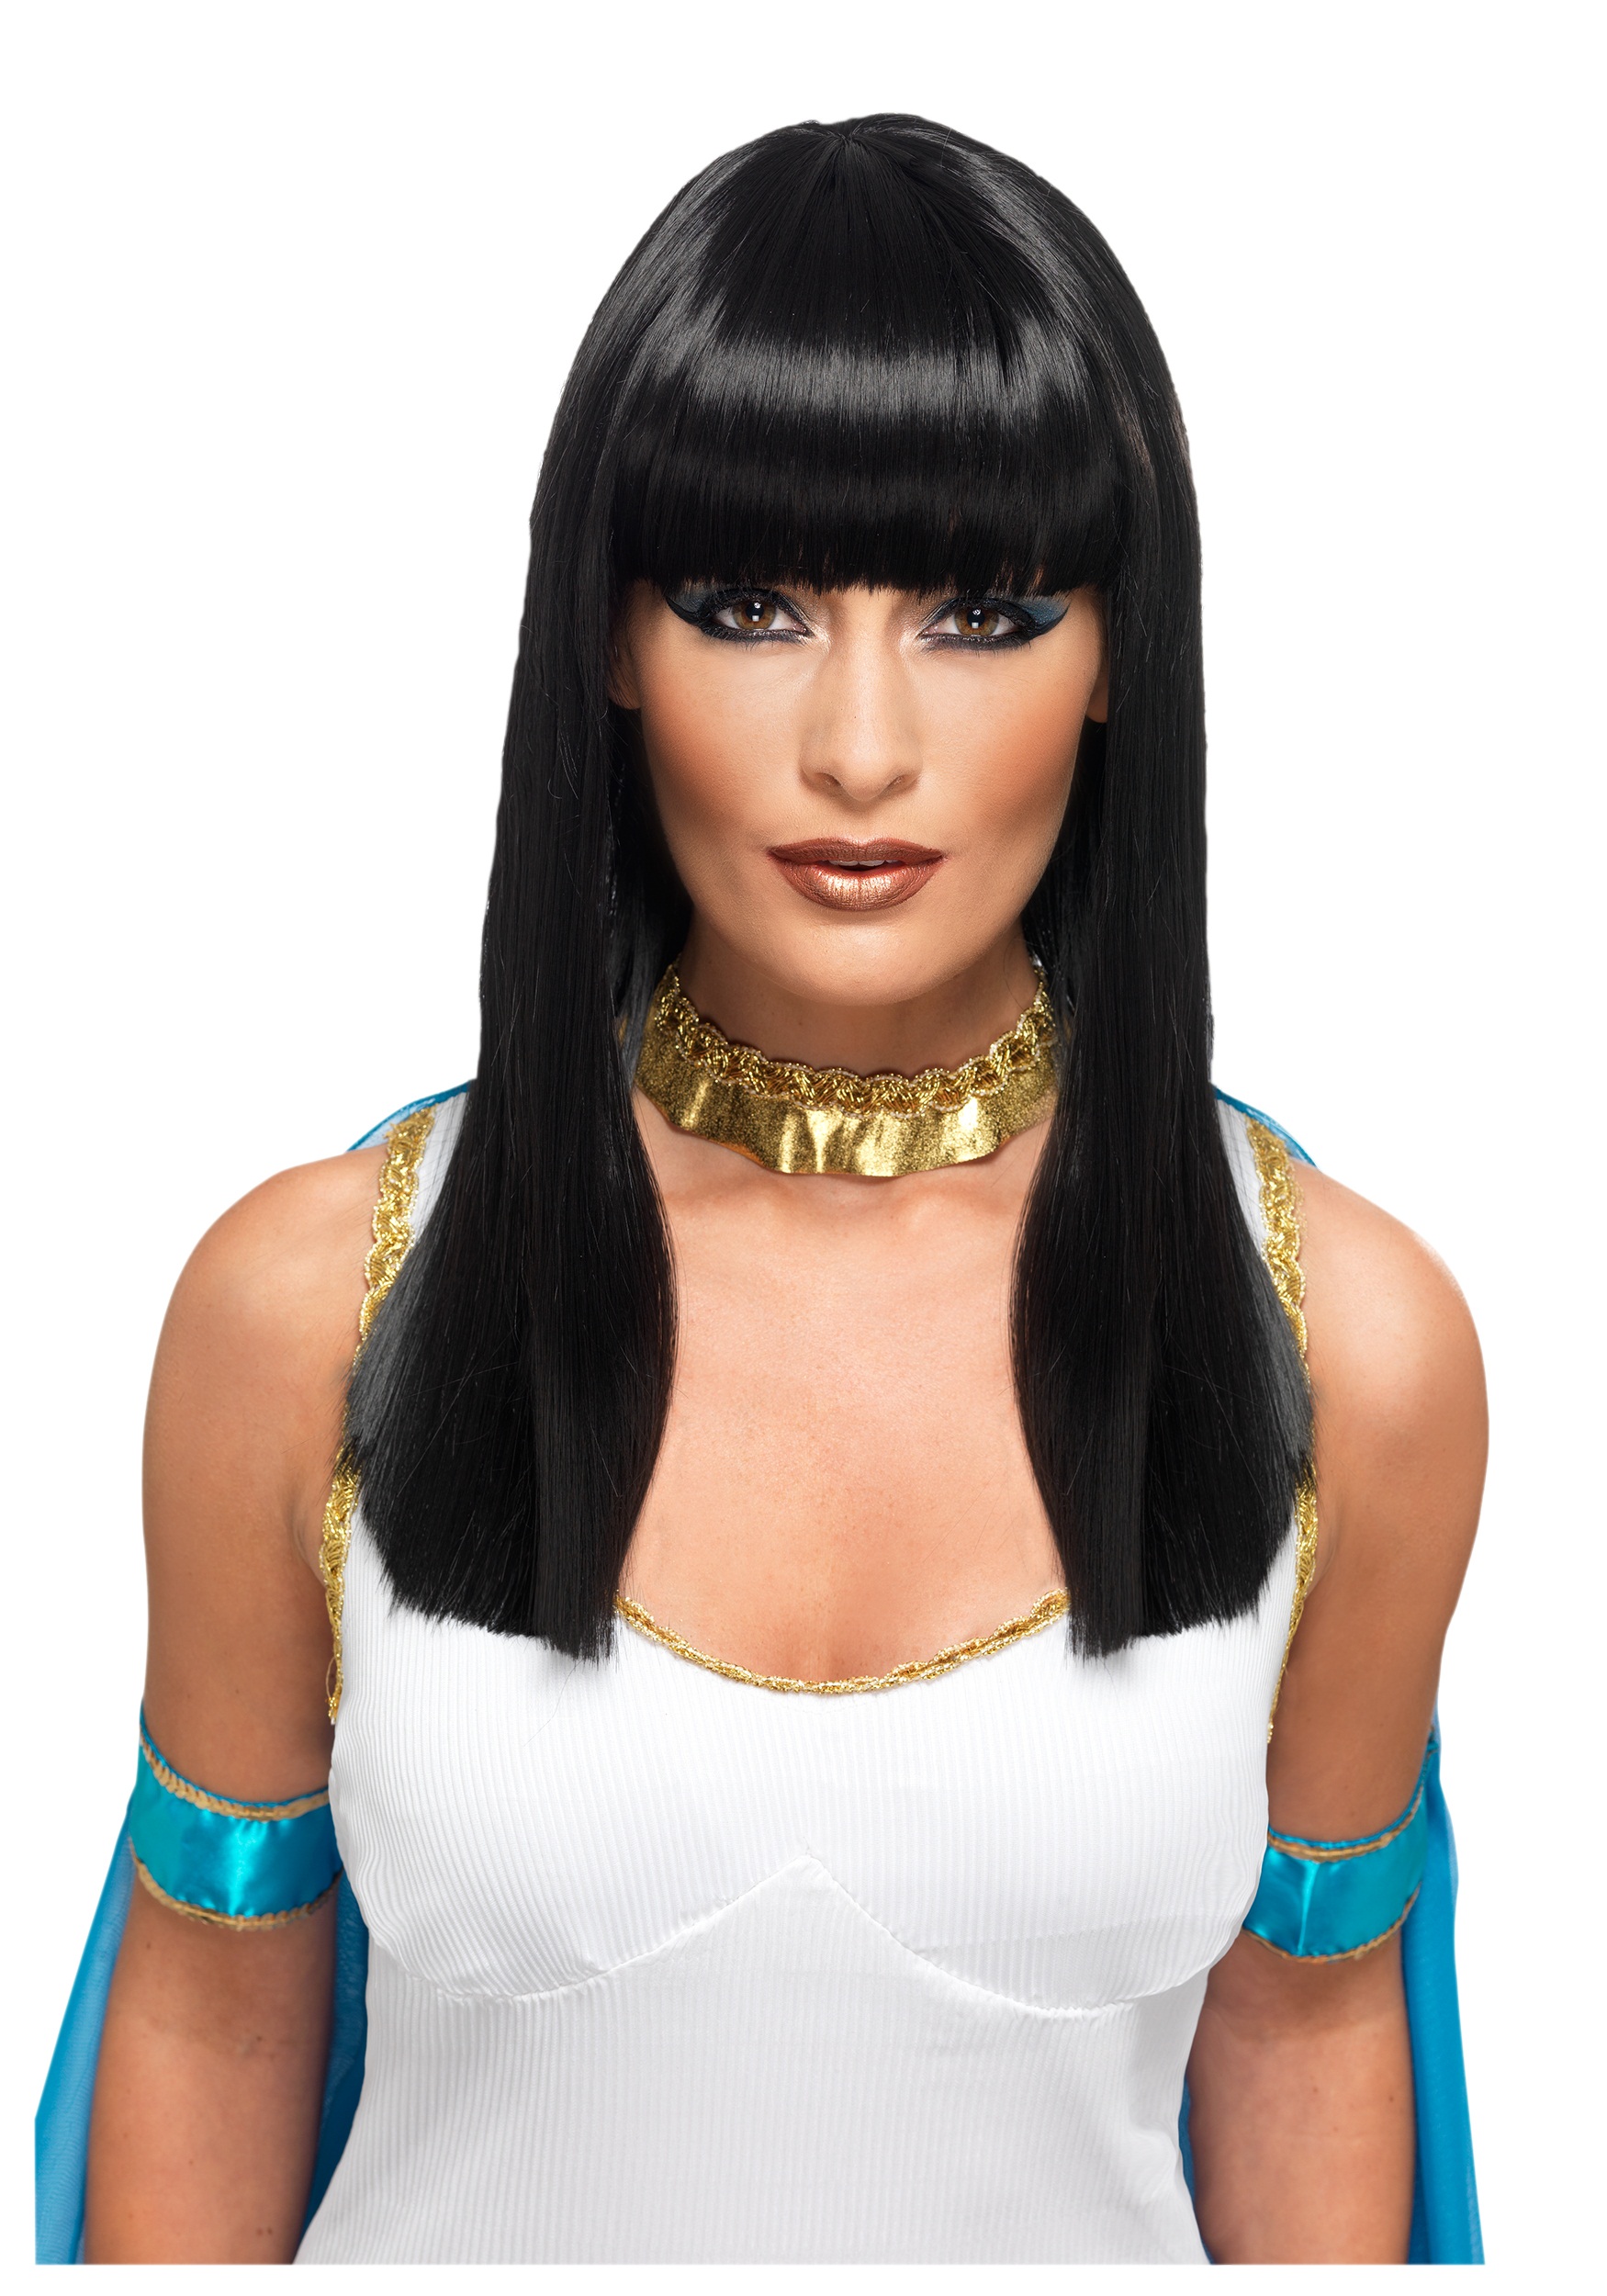 Cleopatra VII - Queen - Biography